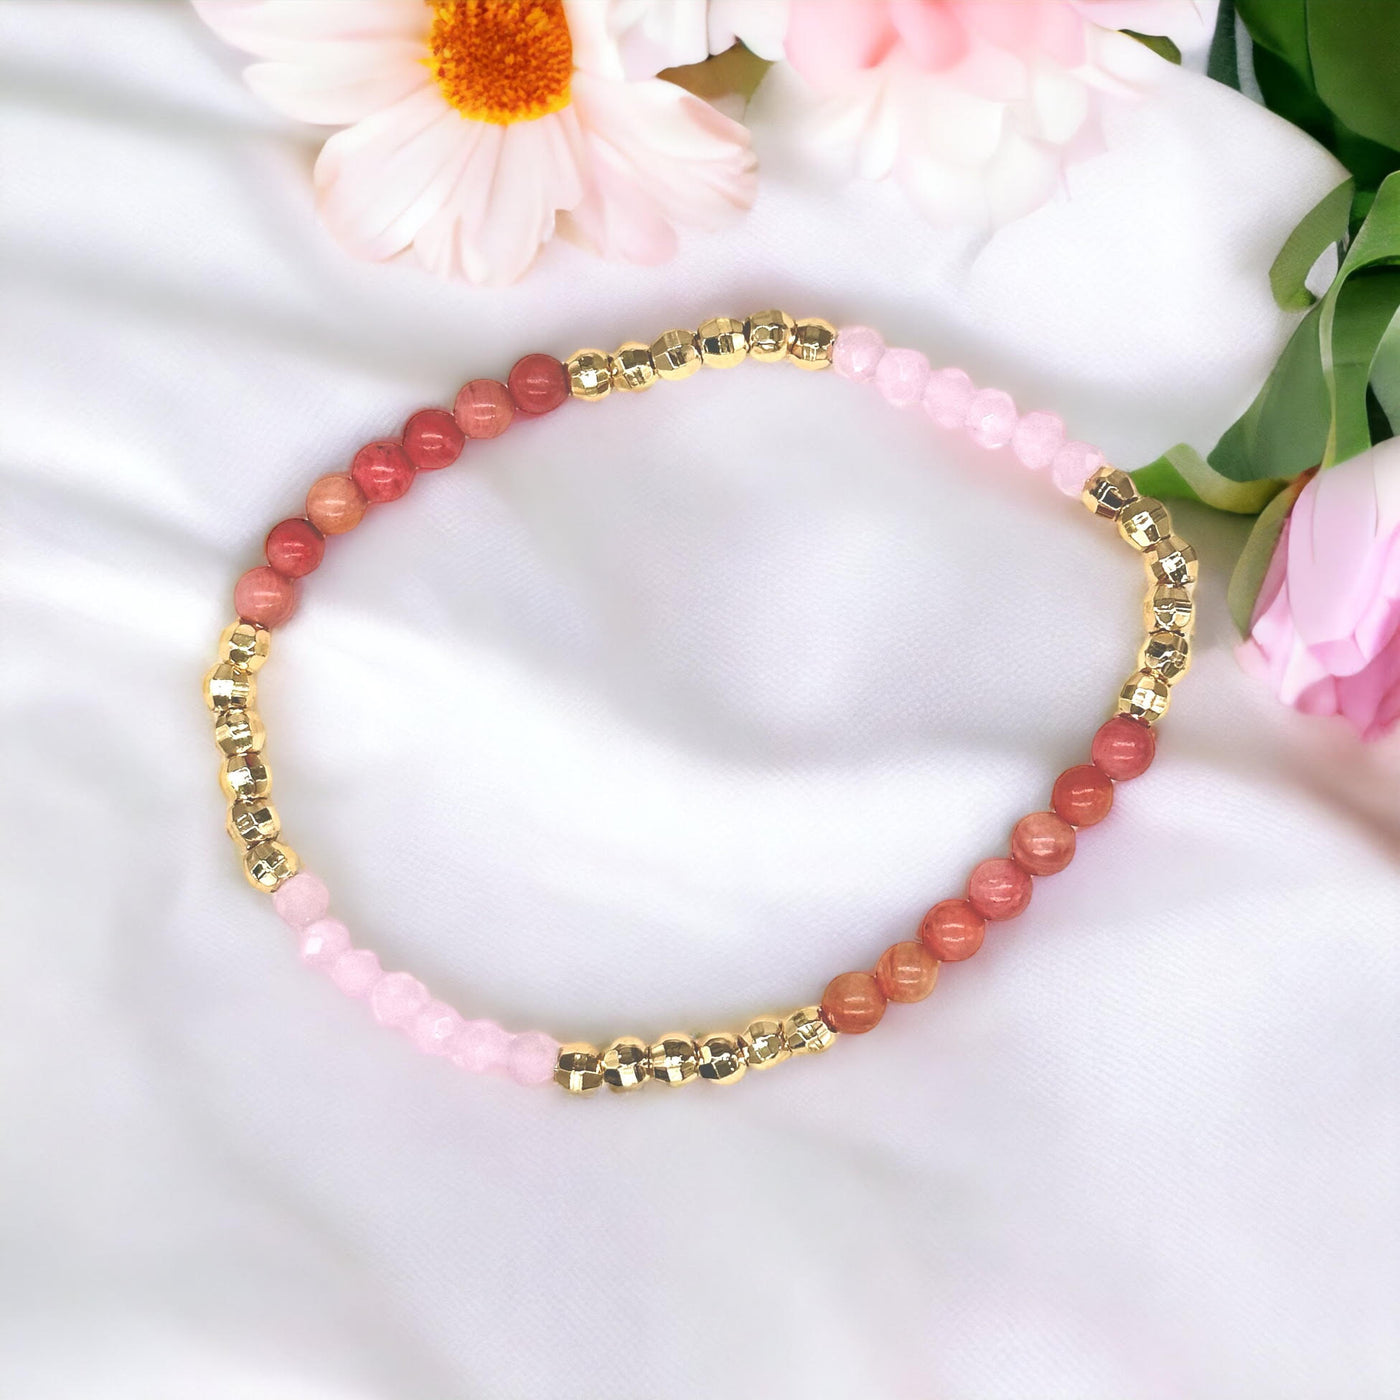 Love & Light Rhodonite Sunstone Rose Quartz Bracelet Set